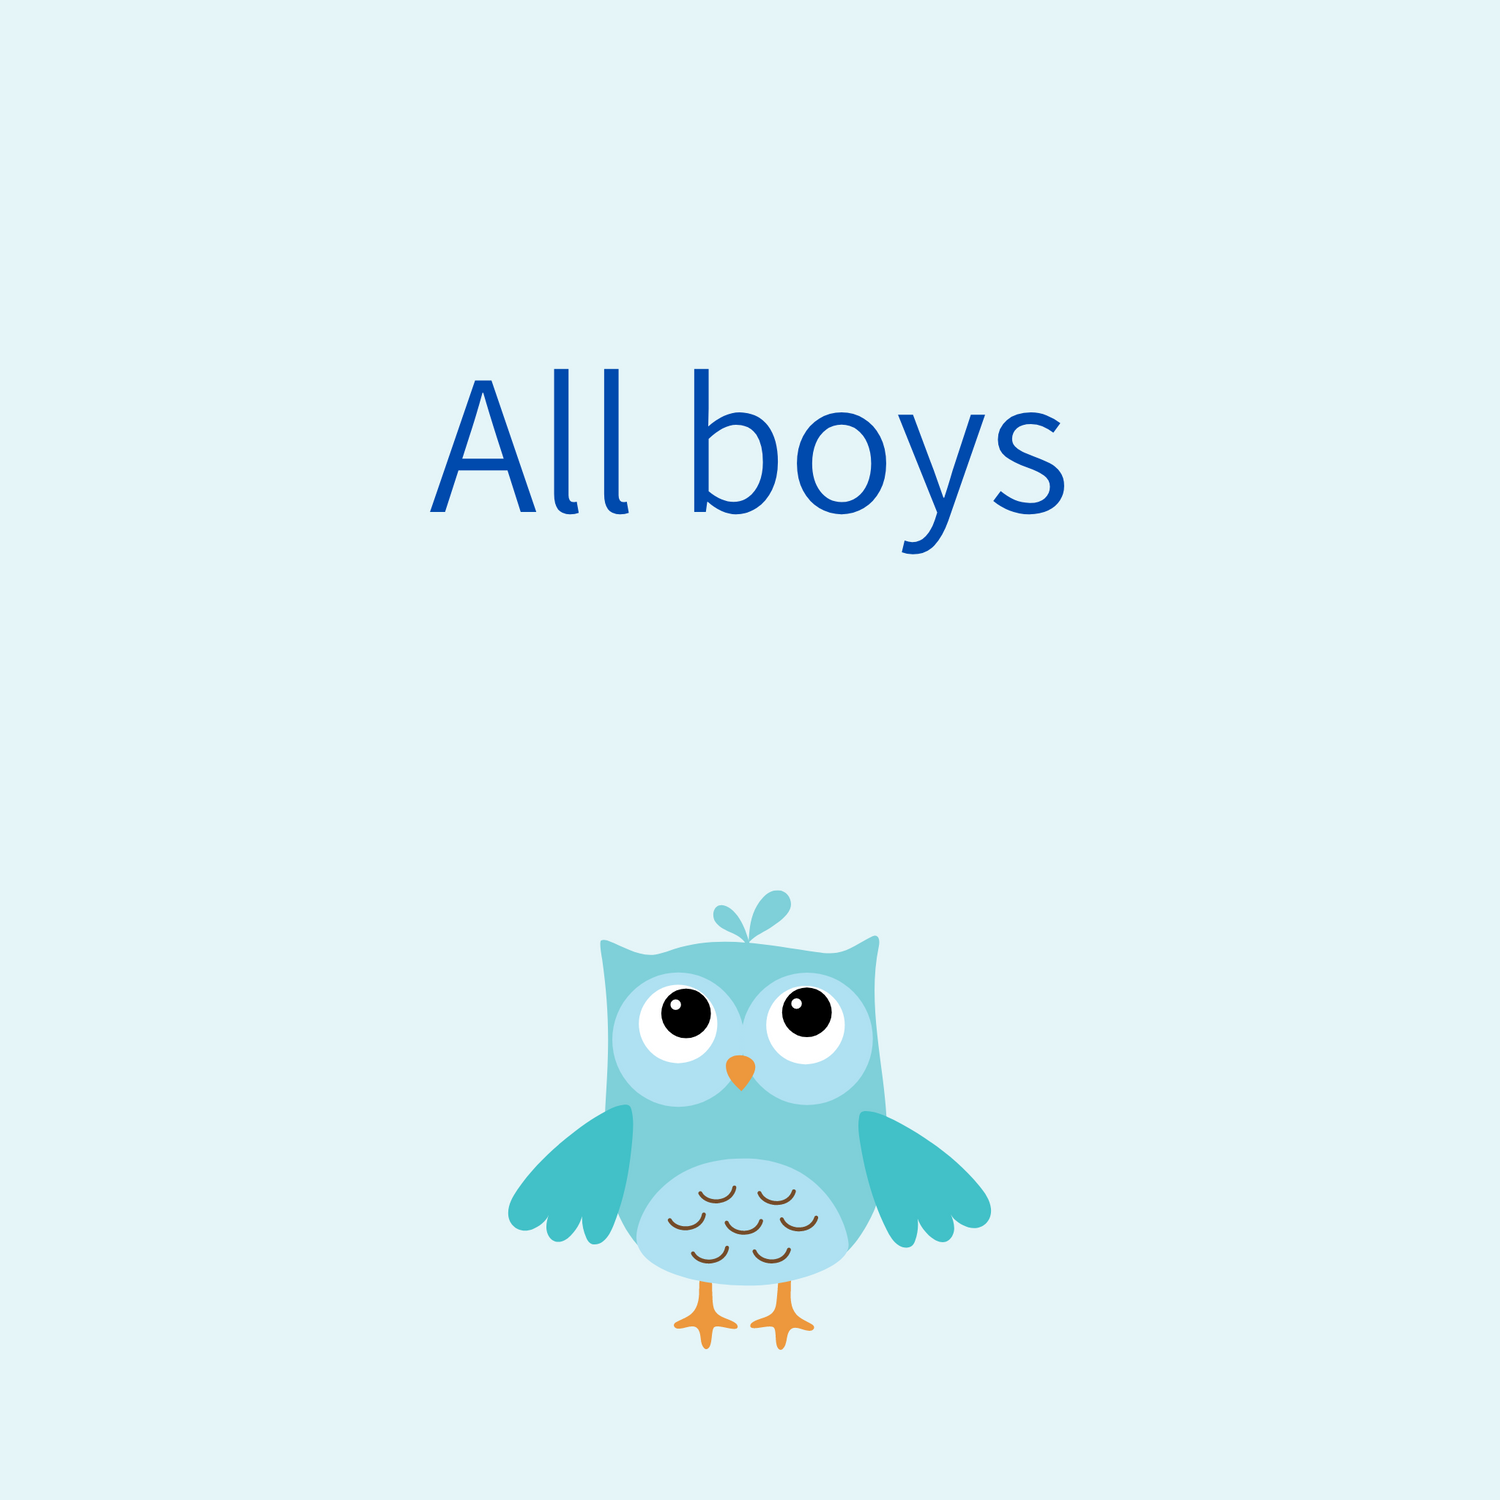 All boys